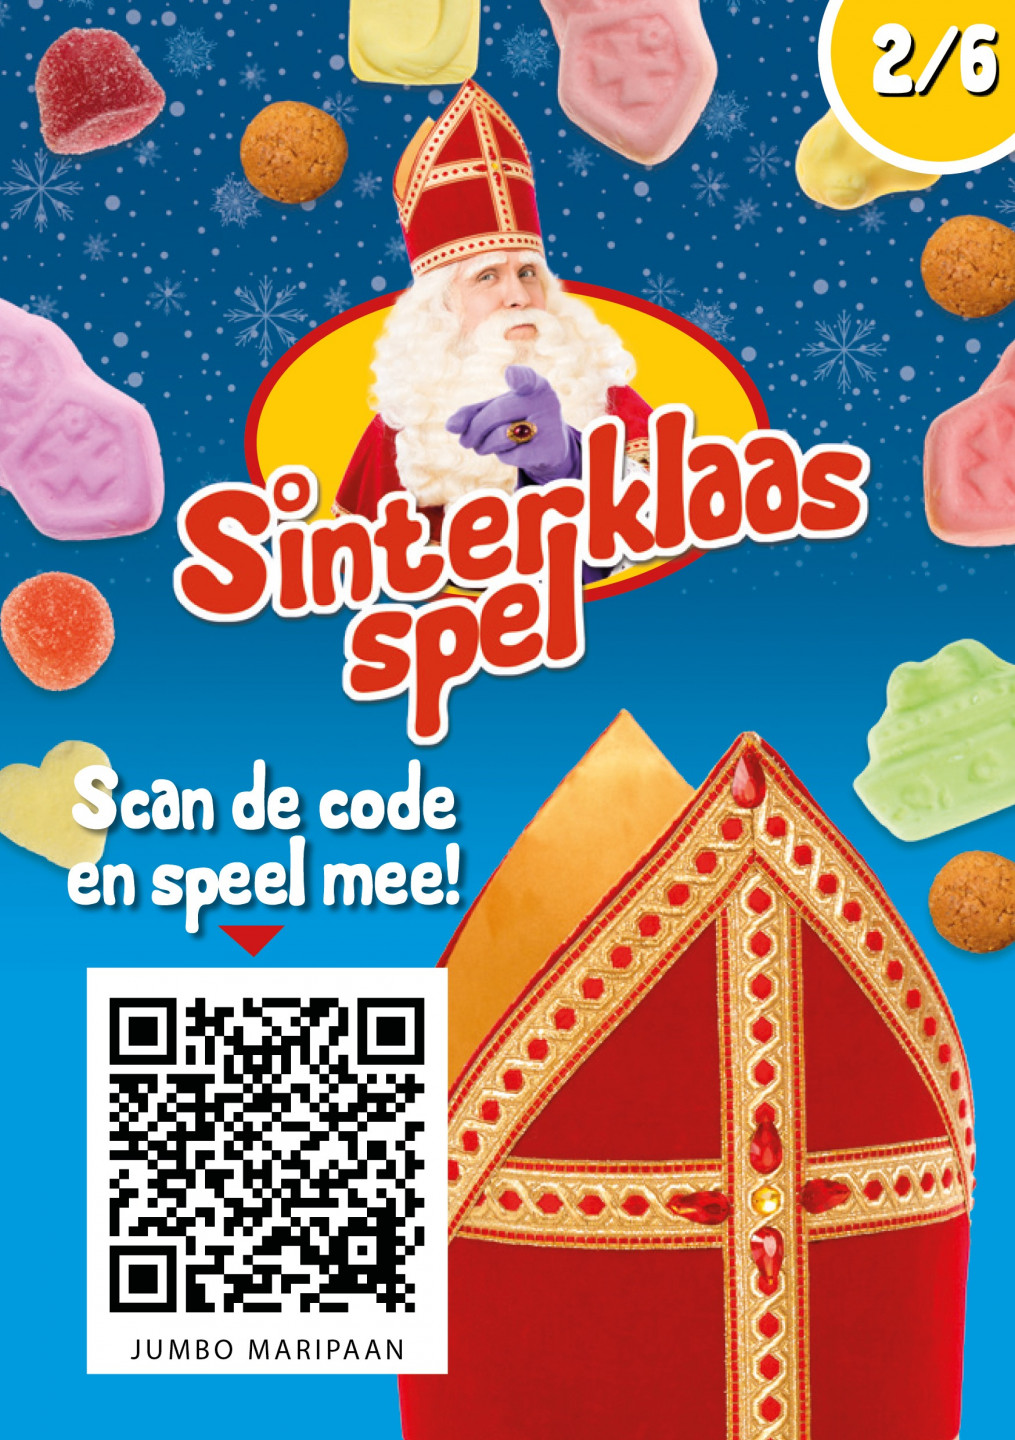 Leuke Sinterklaas spaaracties supermarkt Sinterklaasspel